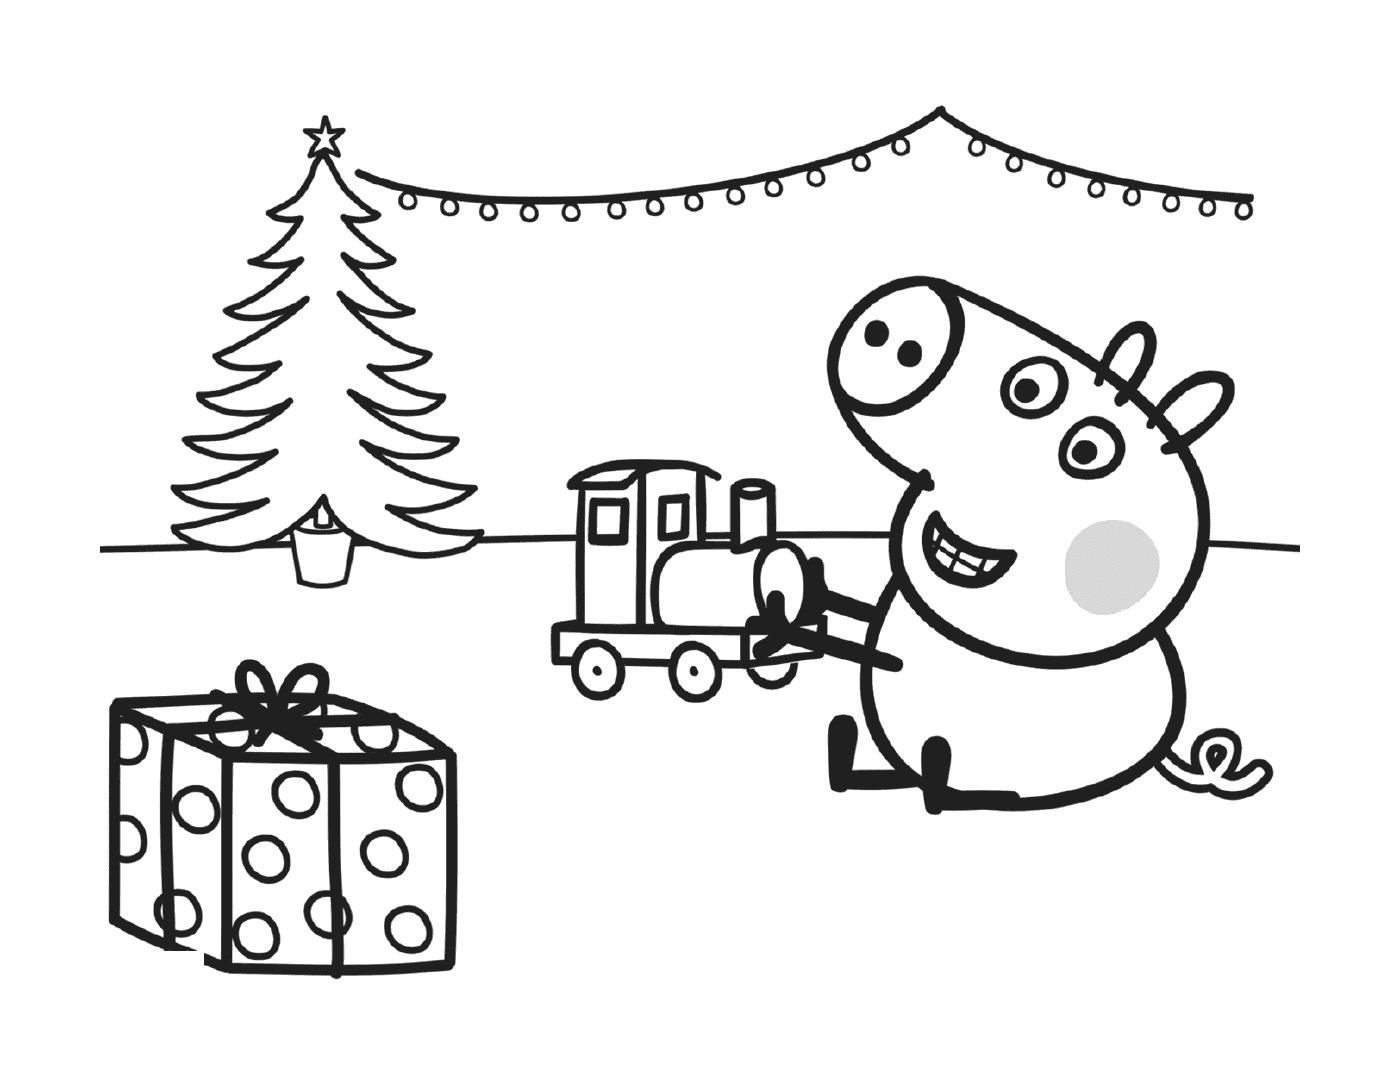  Джордж играет со своим рождественским подарком, поездом 